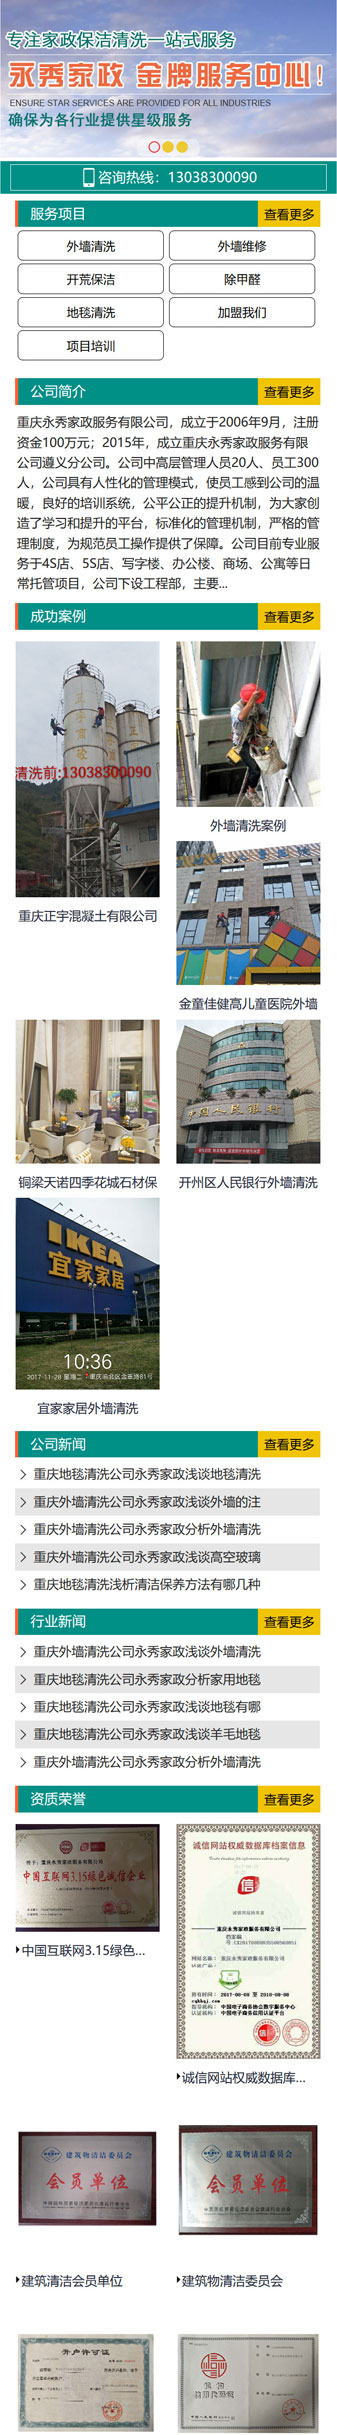 重庆永秀家*服务公司网站建设案例